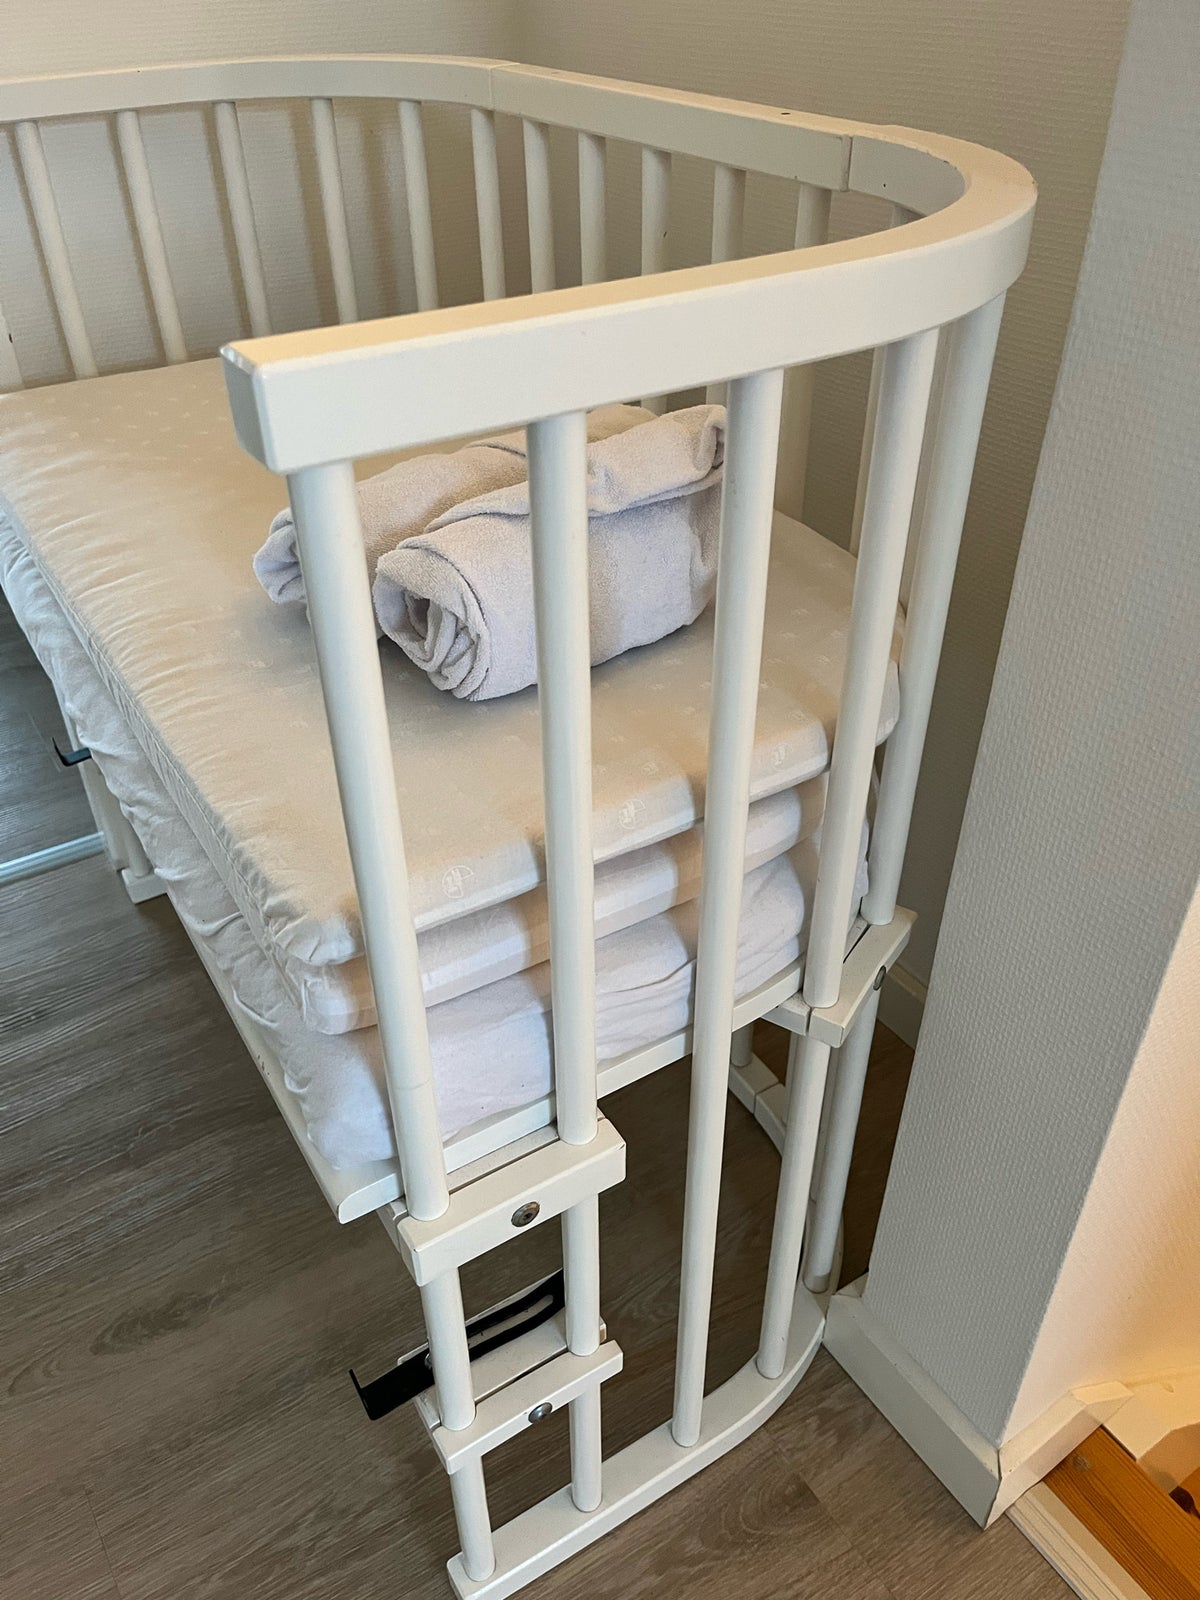 Babyseng, Bedside crib, b: 46 l: 88